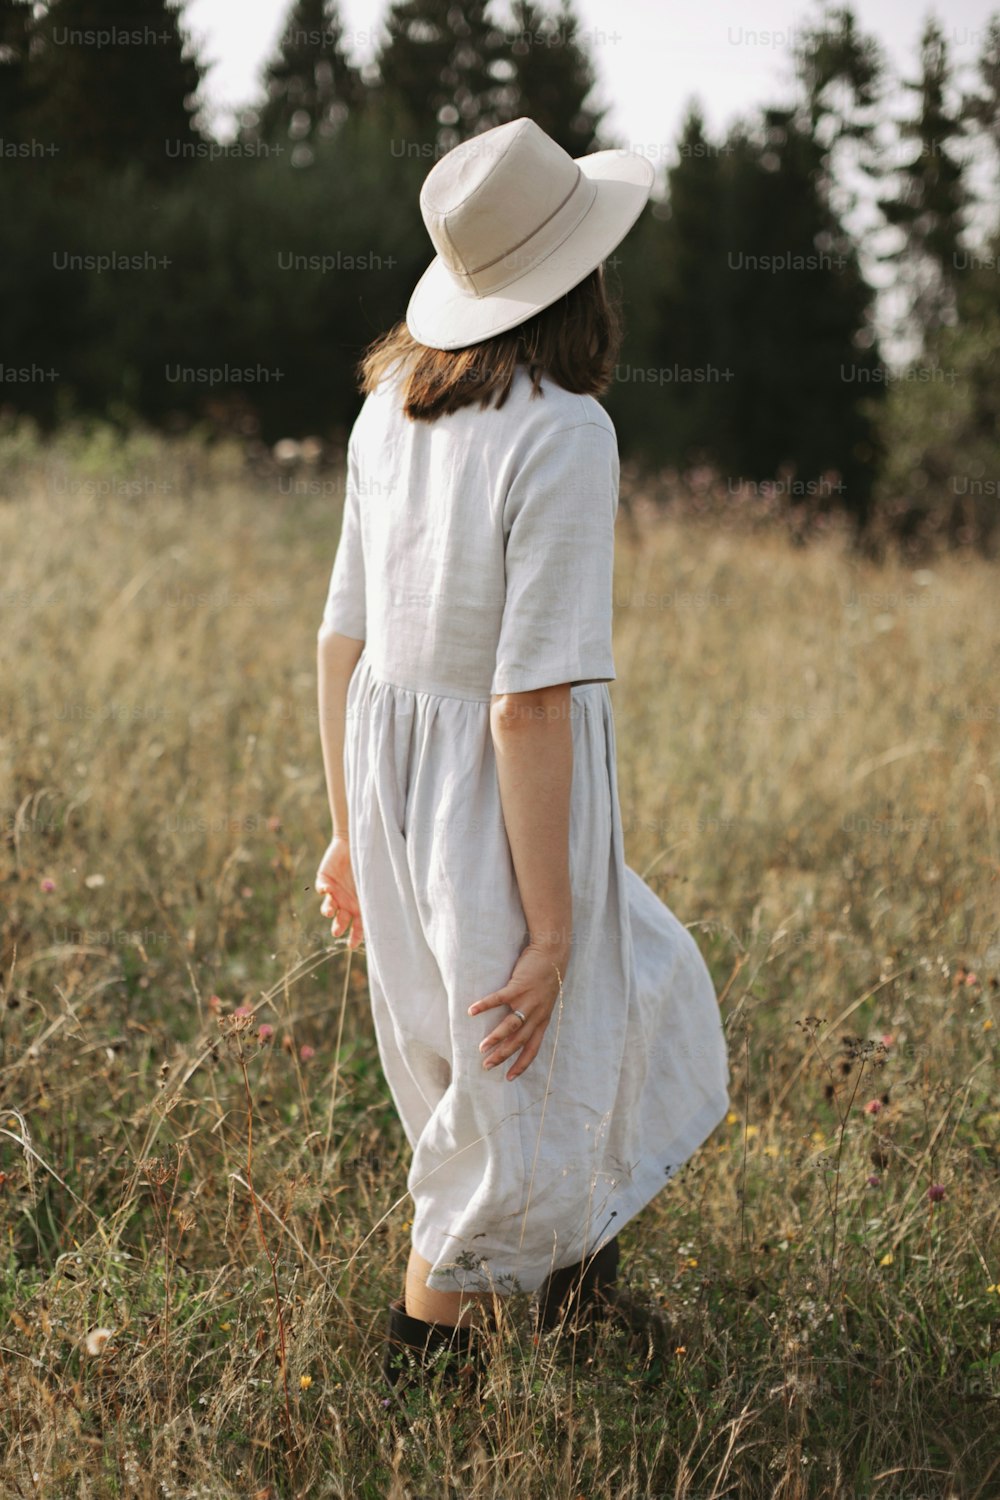 Muchacha elegante con vestido de lino y sombrero caminando entre hierbas y flores silvestres, mirando el campo. Mujer boho relajándose en el campo, estilo de vida simple y lento.  Imagen atmosférica